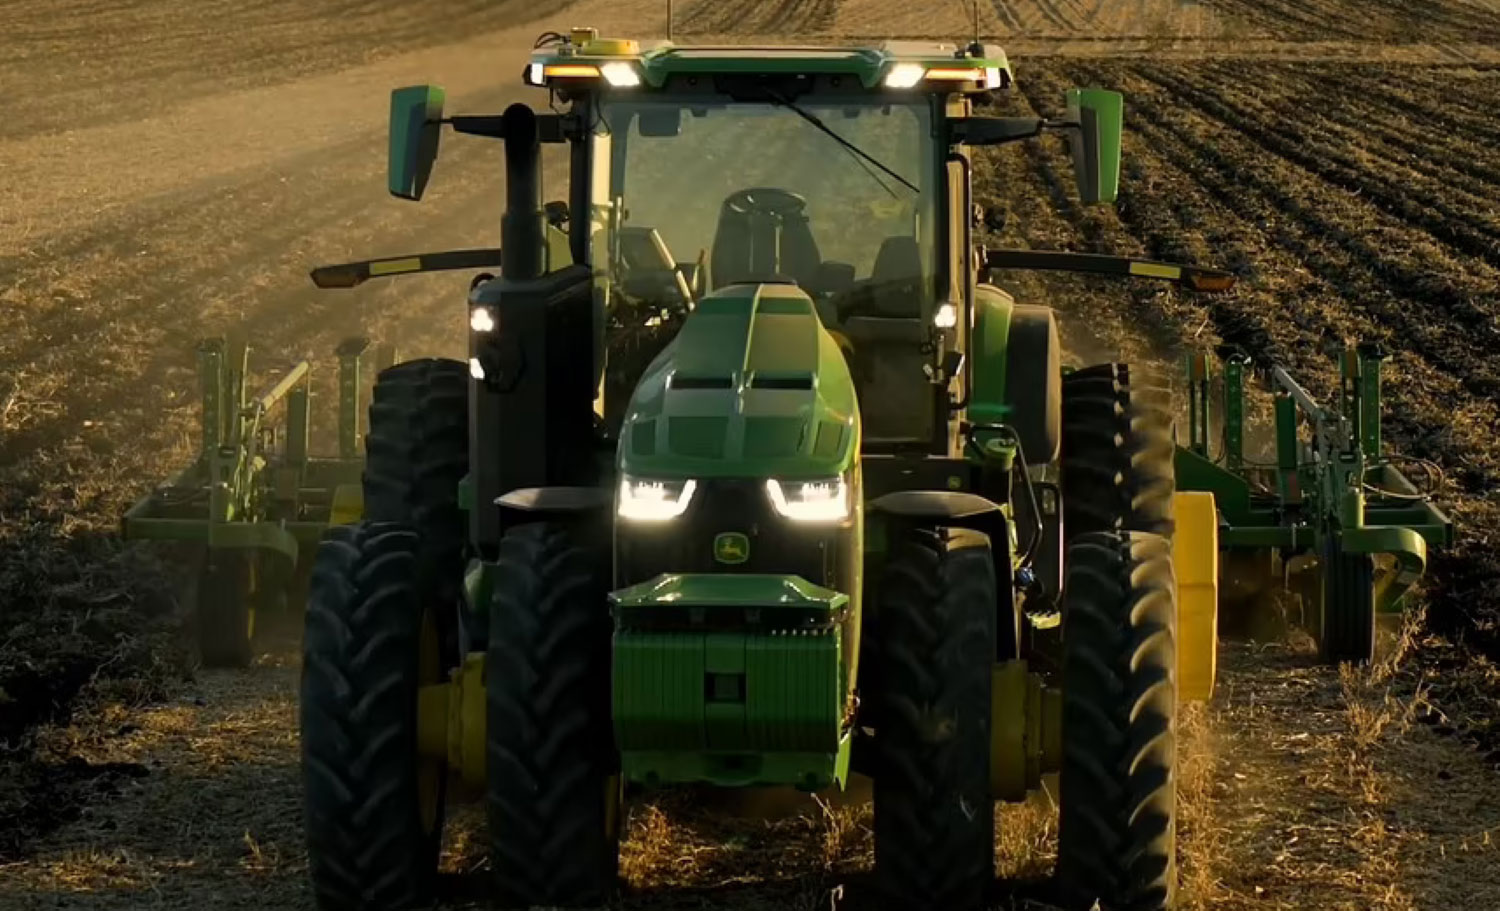 Иднината на земјоделството без луѓе: Трактор робот без возач обработува нива и сади семе / ВИДЕО